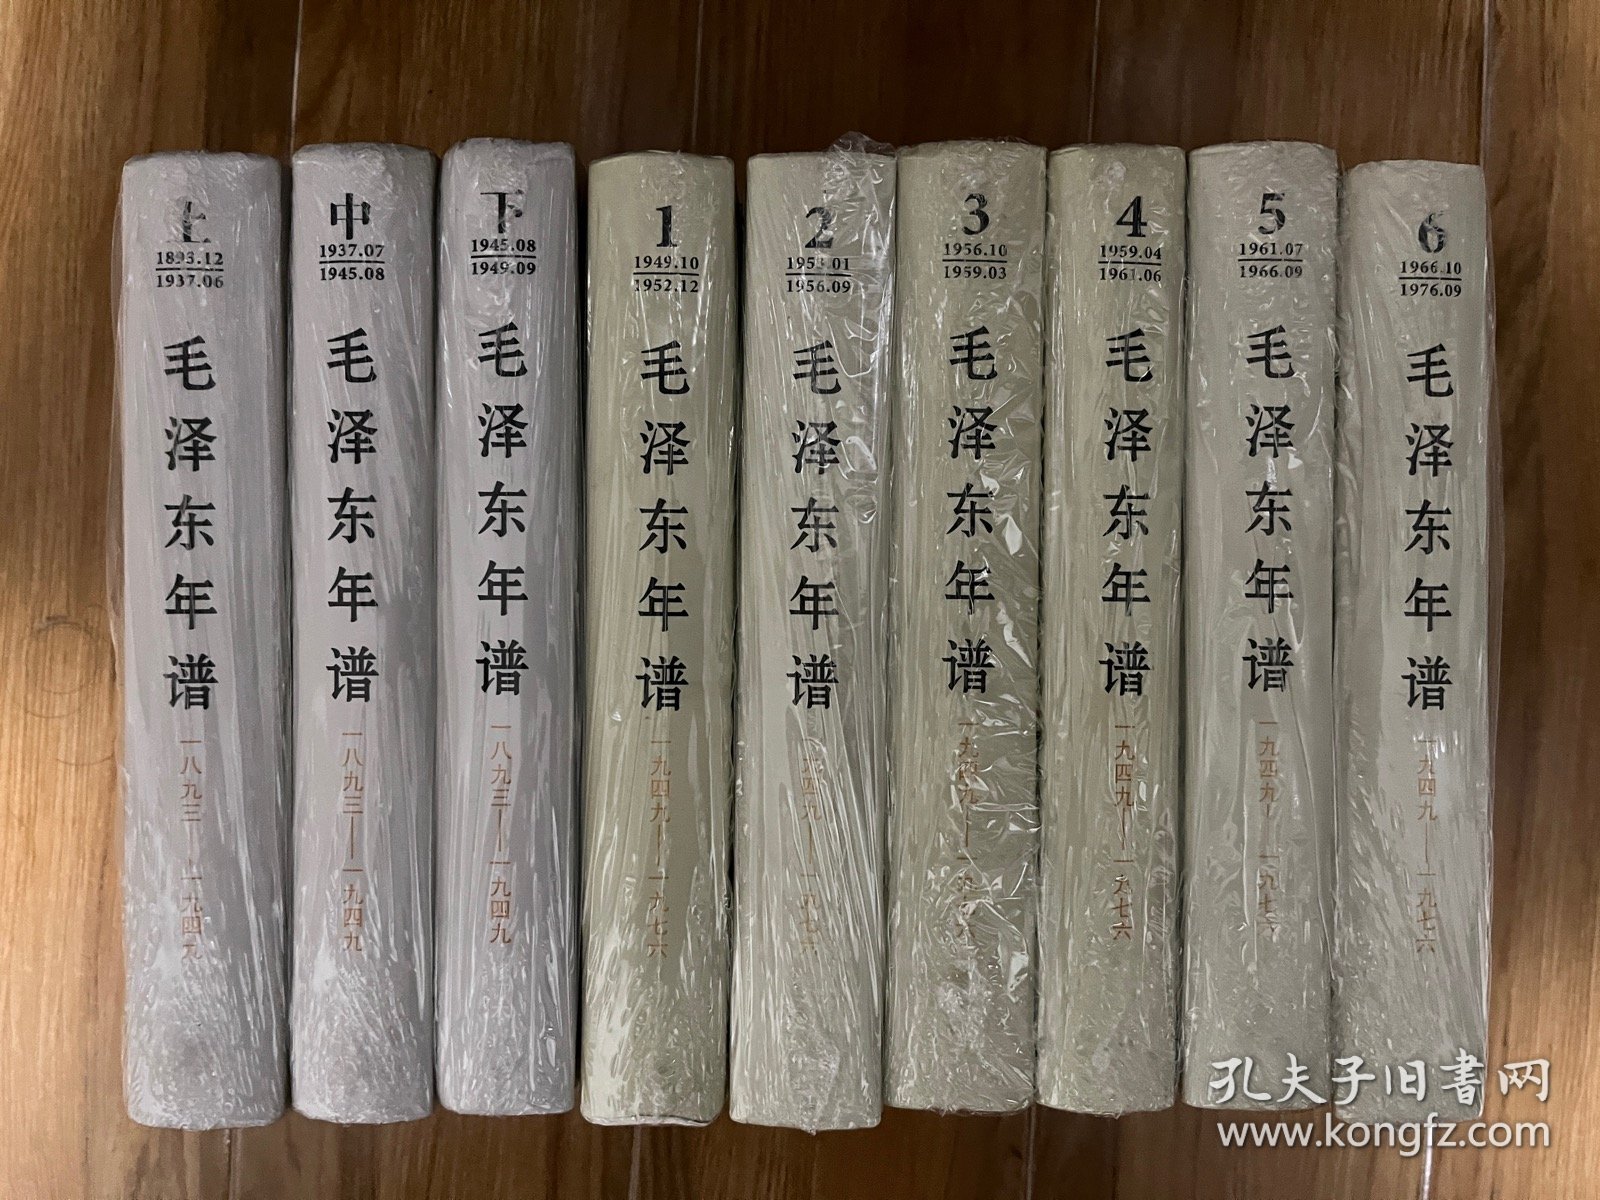 毛泽东年谱（1893——1949）1-3卷和毛泽东年谱（1949-1976）1-6卷、精装，1版1印、全9册合售